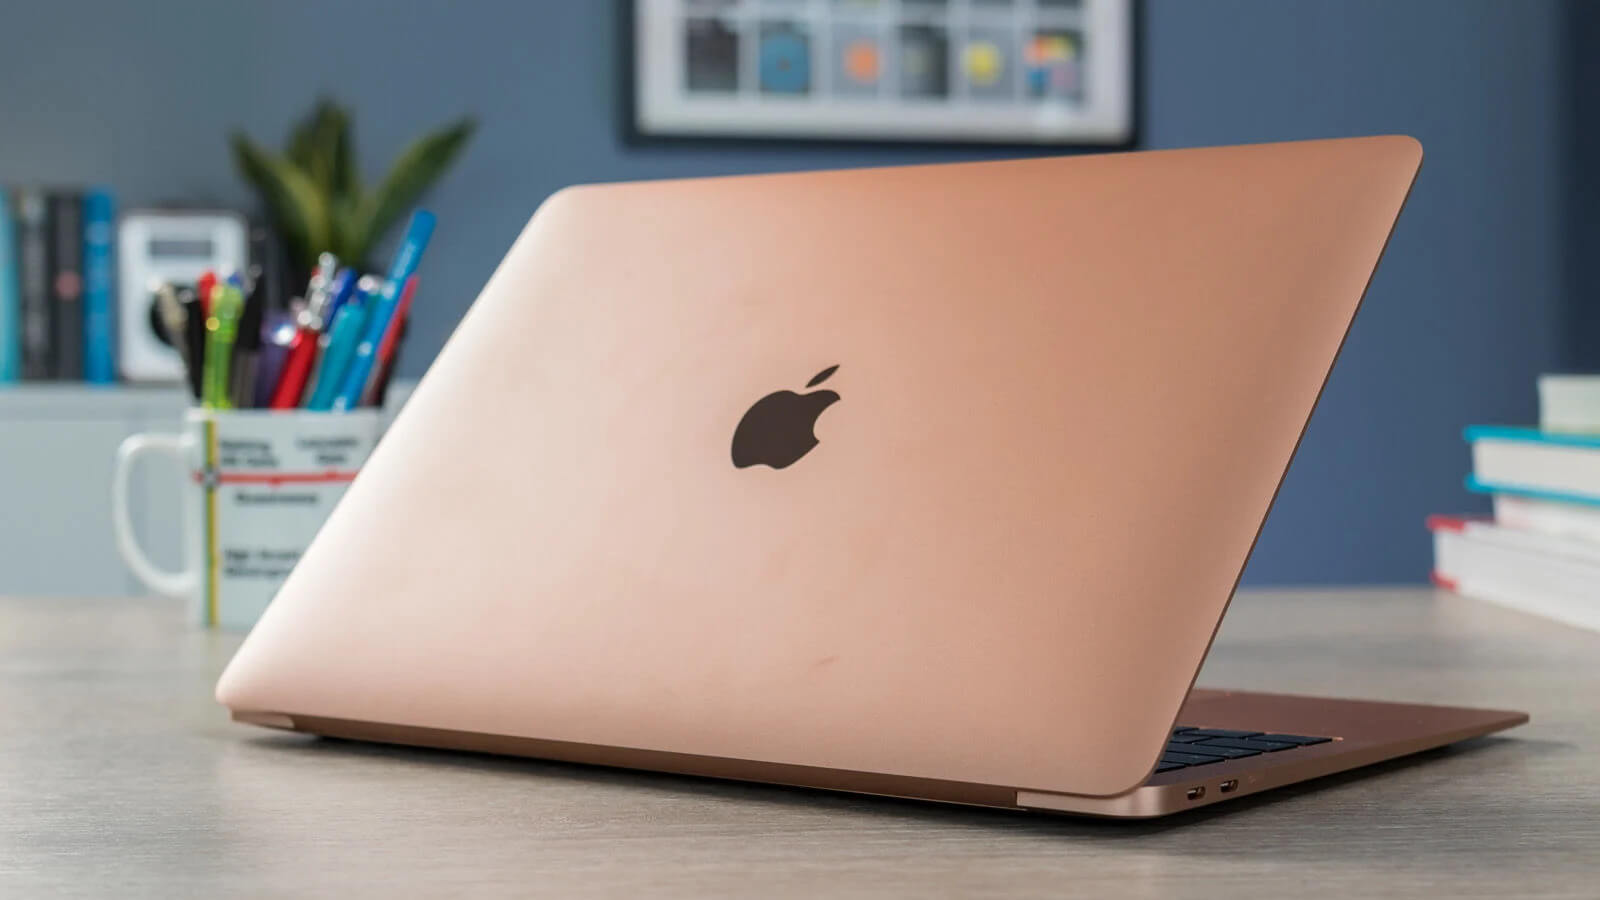 Trên tay MacBook 2016 phiên bản màu hồng quyến rũ